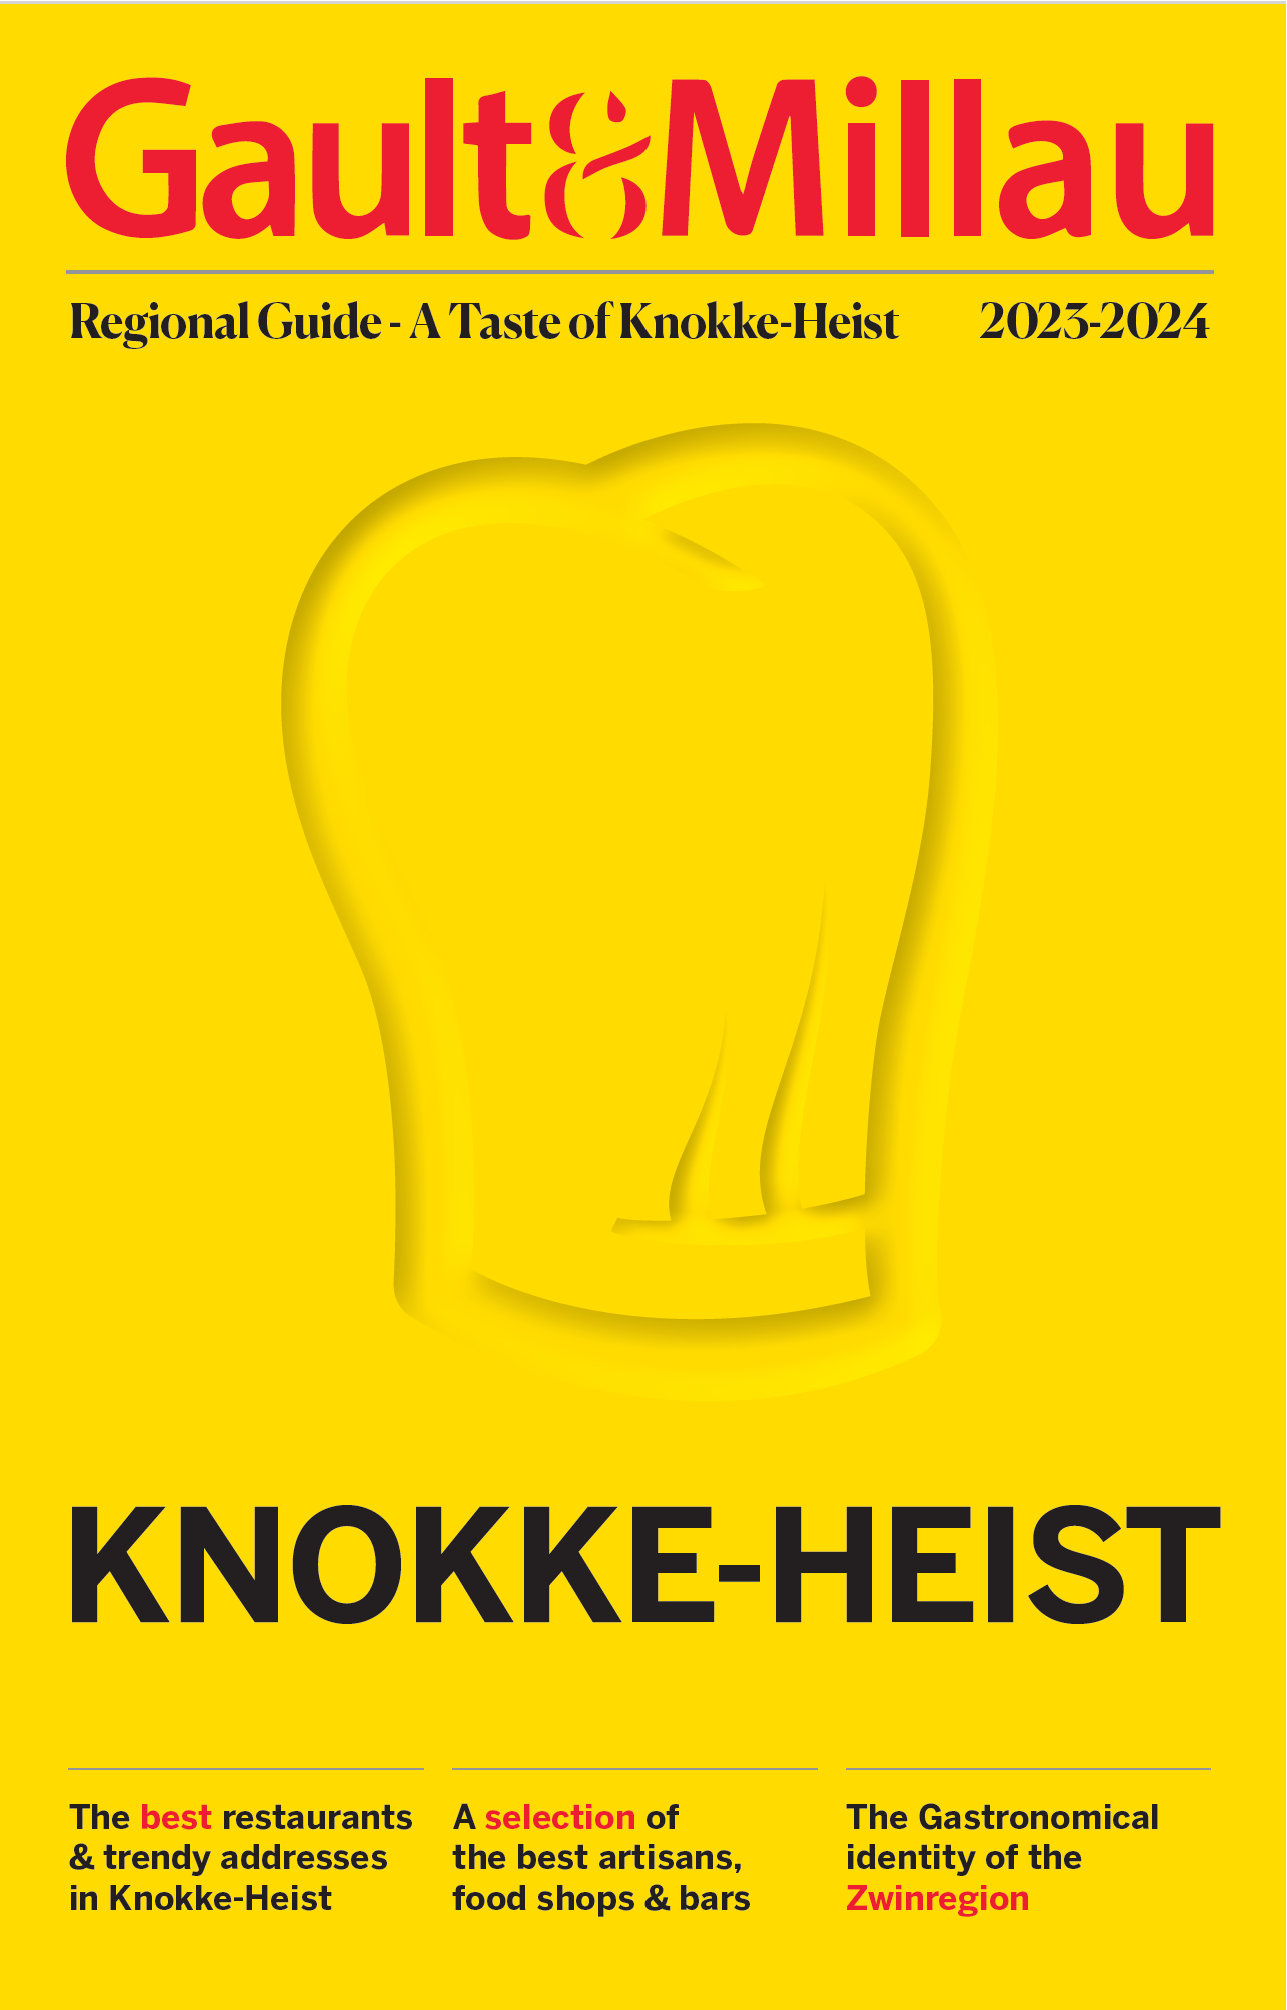 A Taste of Knokke-Heist by Gault&Millau